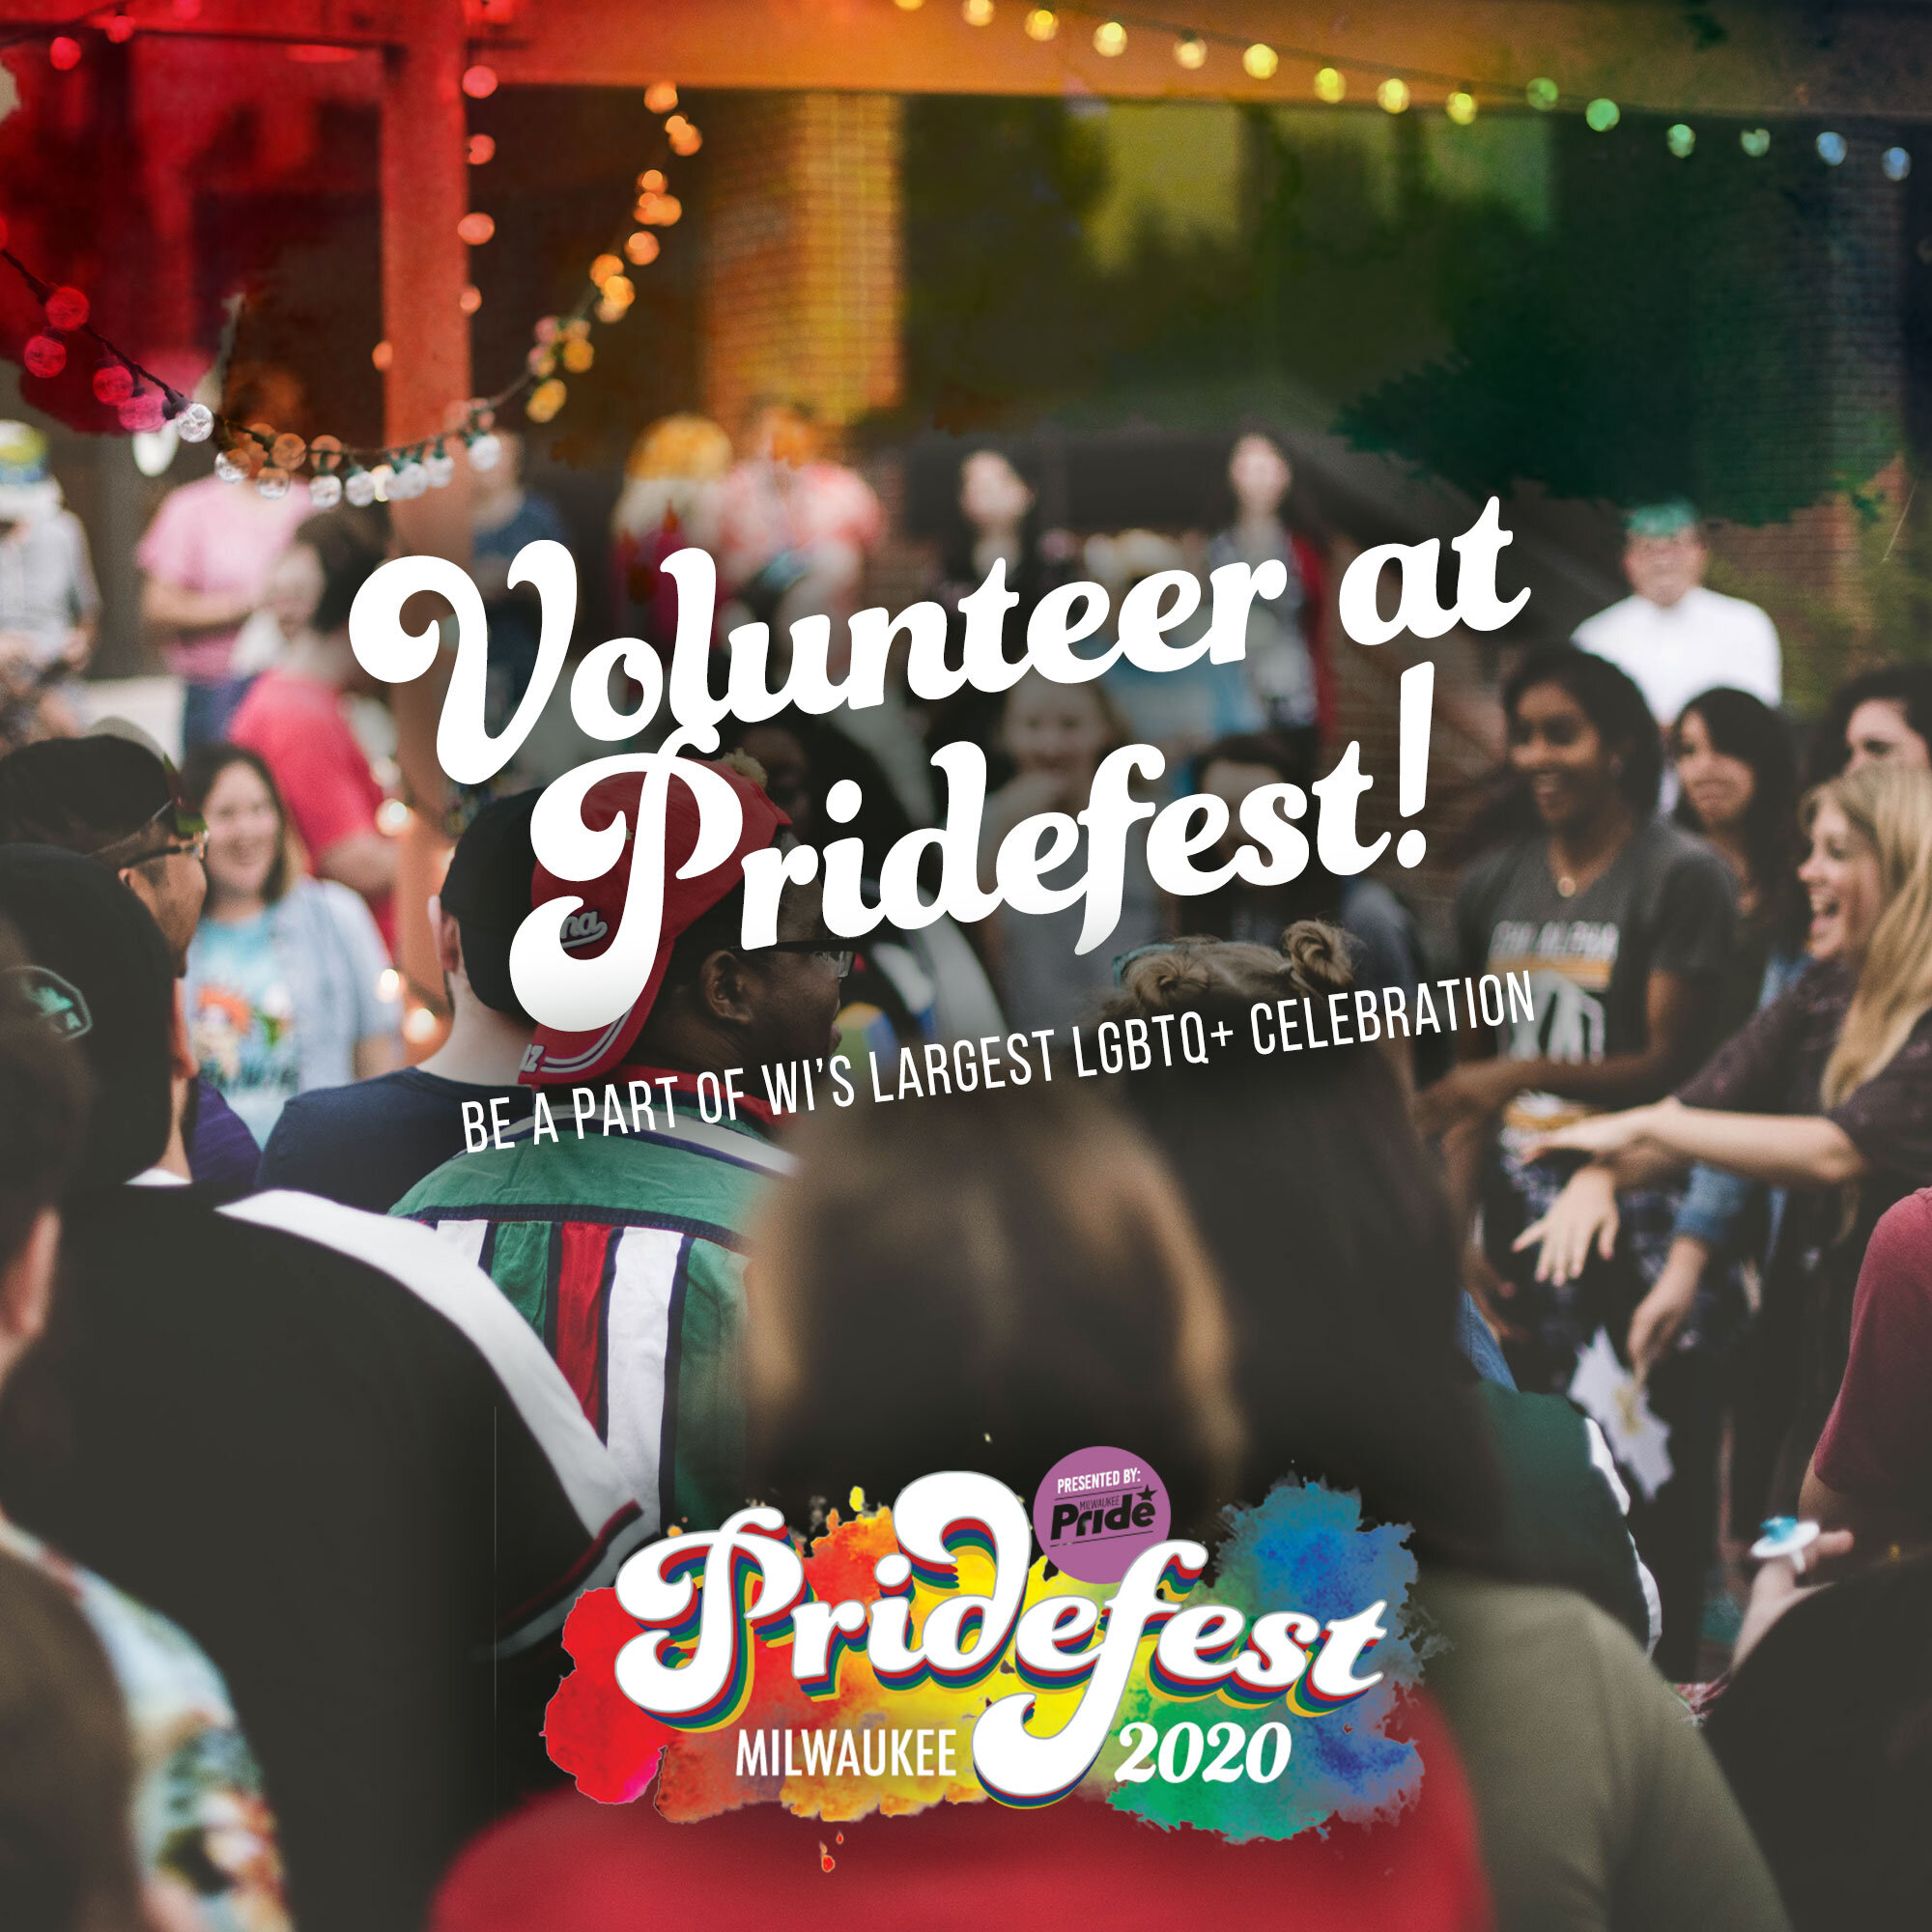 Pridefest-MKE-Volunteer-at-Pridefest-1.jpg